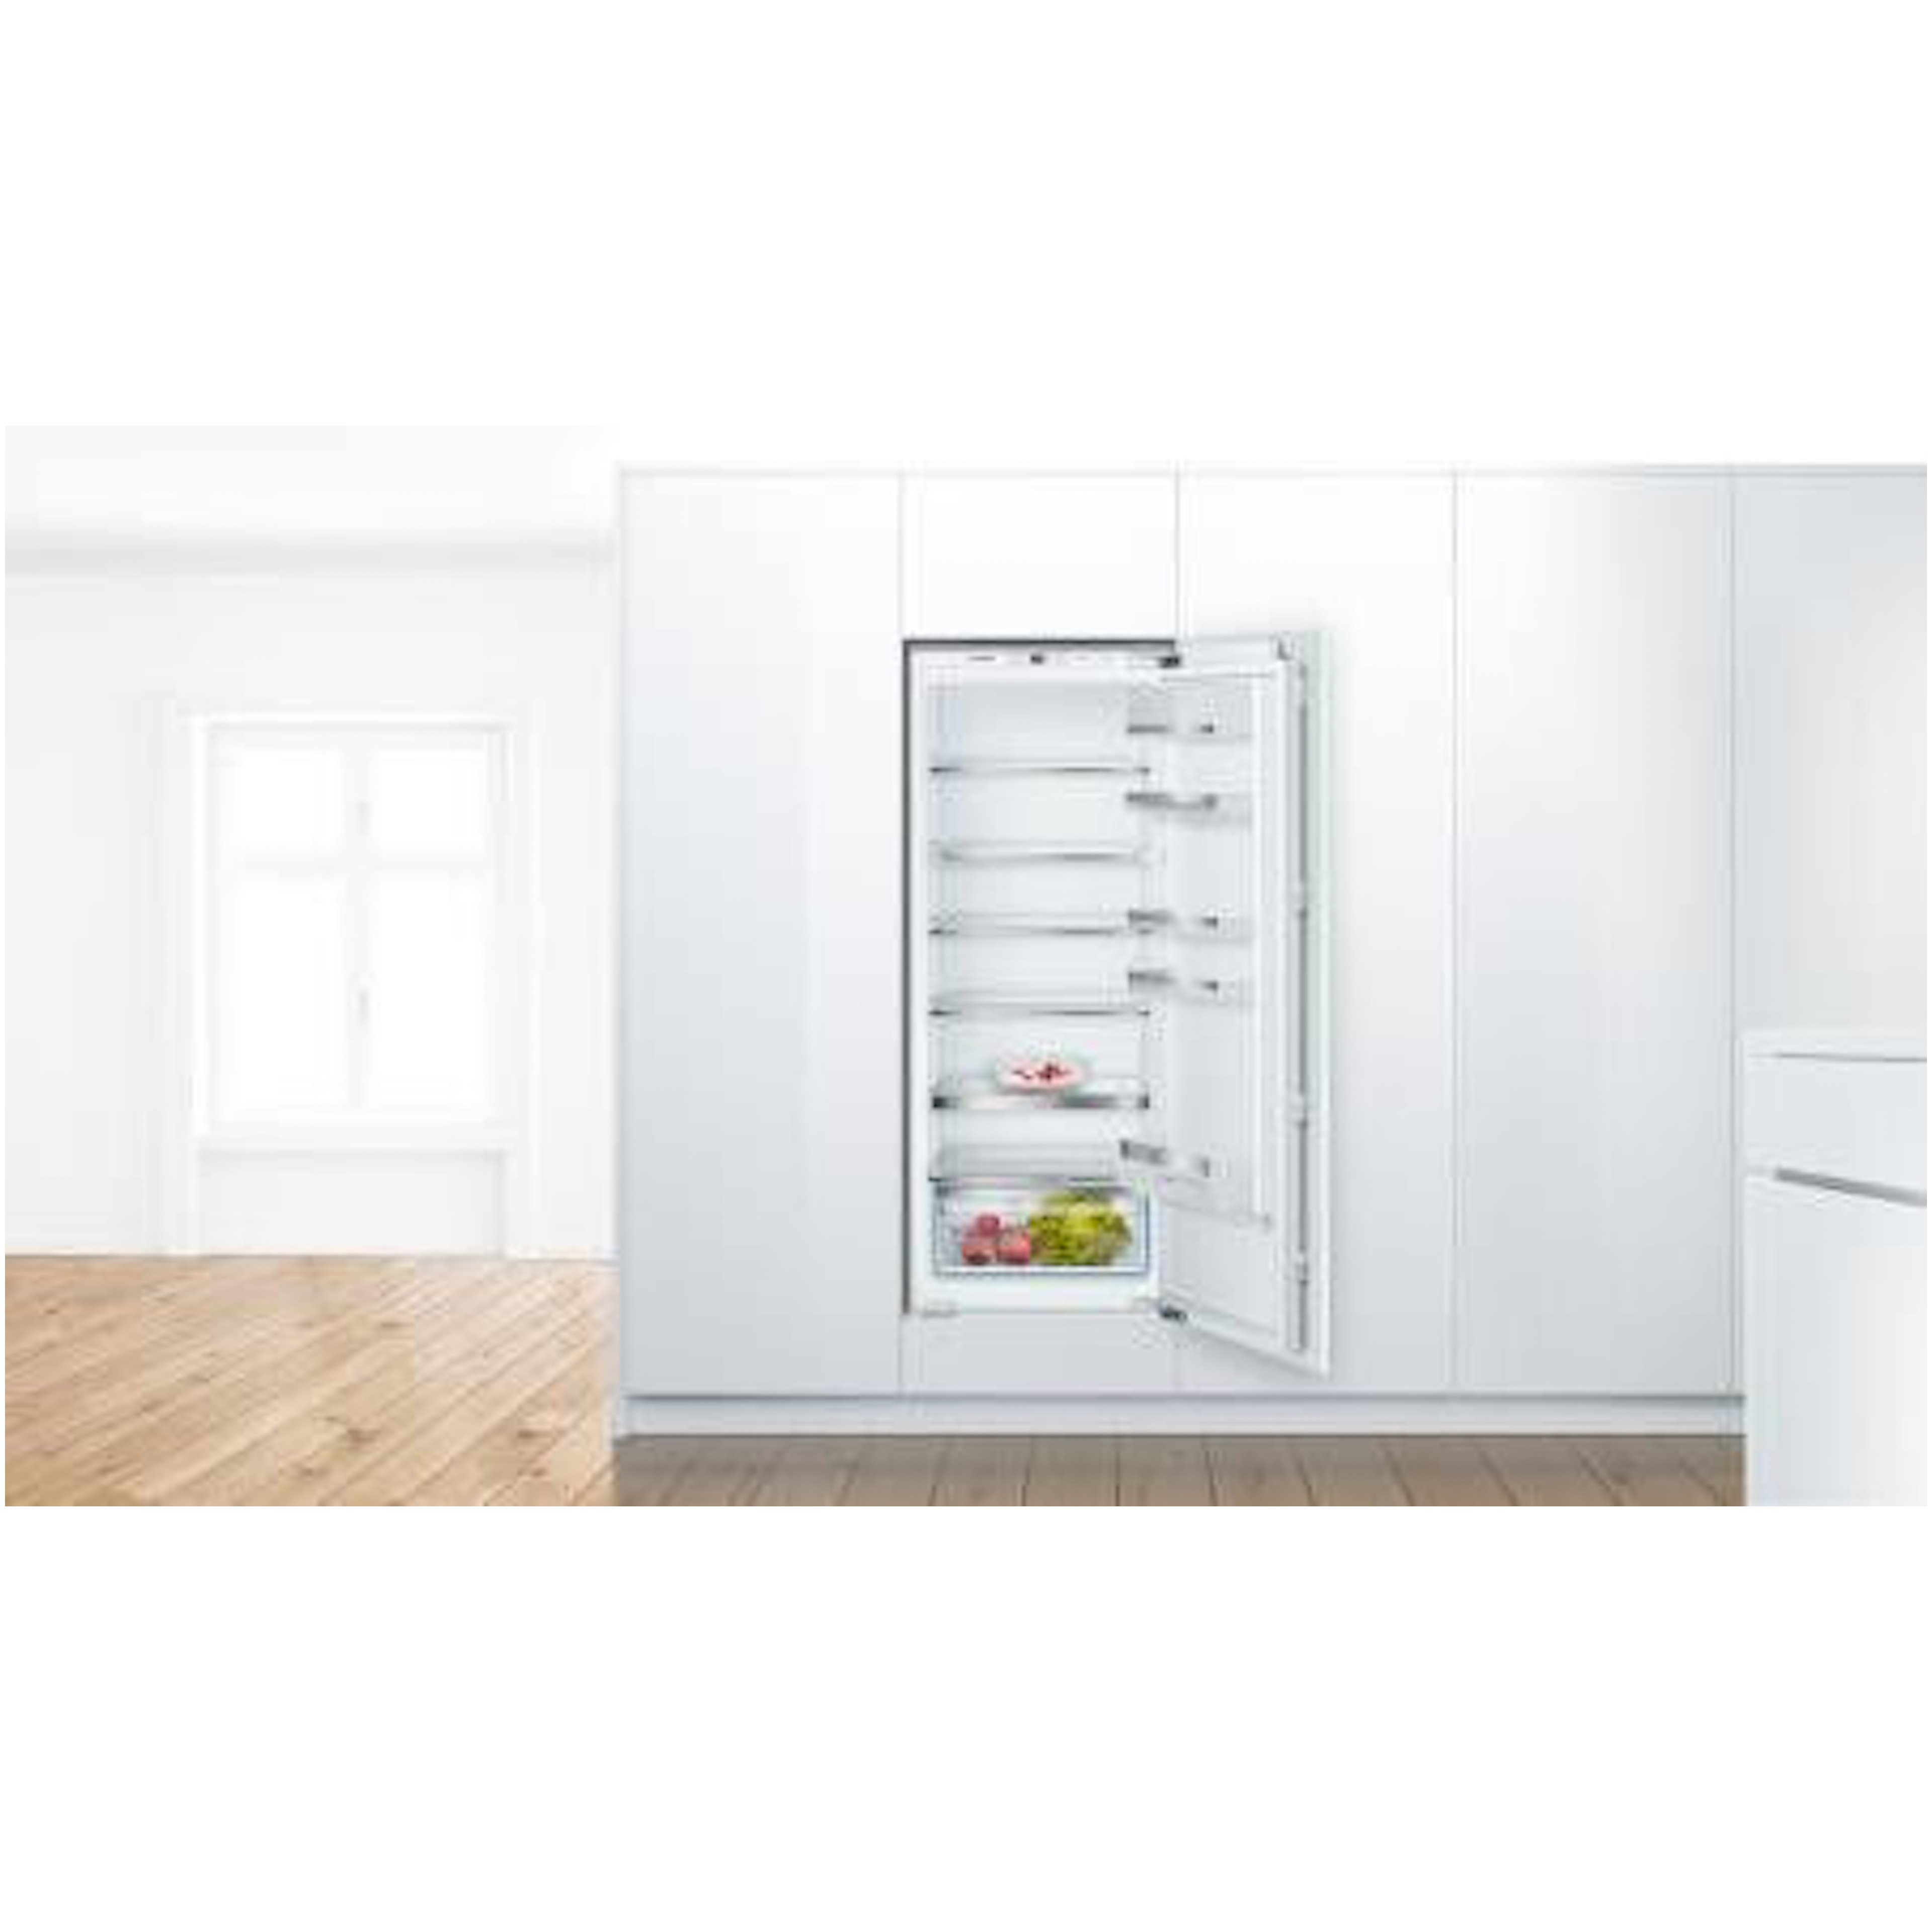 Bosch koelkast inbouw KIR51ADE0 afbeelding 4